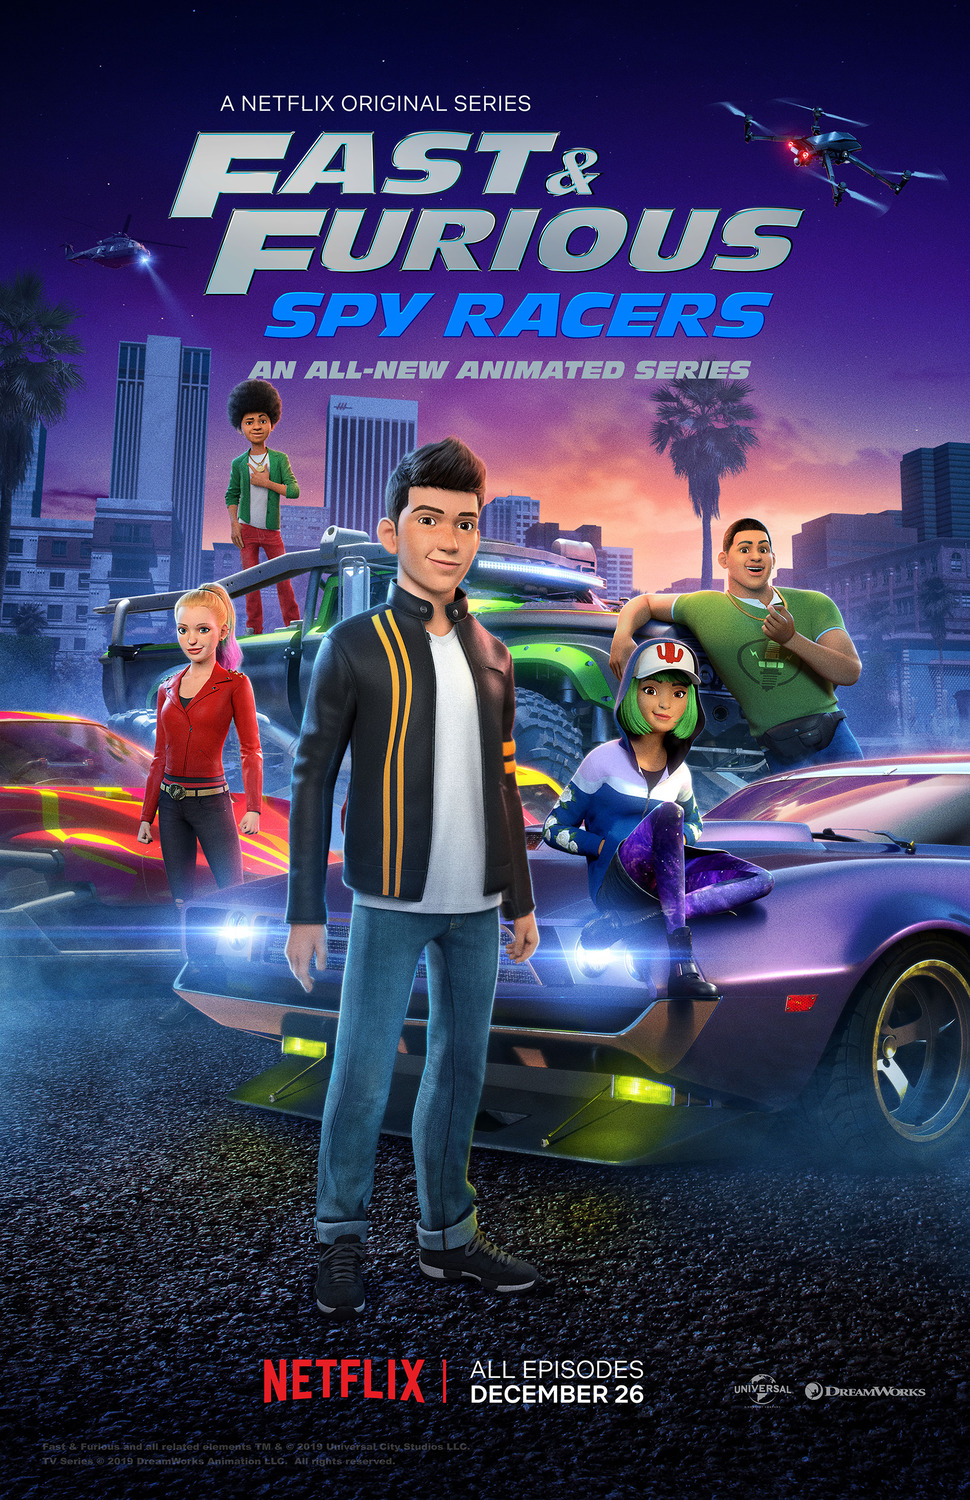 ดูหนังออนไลน์ฟรี Fast & Furious Spy Racers Season 6 EP6 เร็วแรงทะลุนรก ซิ่งสยบโลก ซีซั่น 6 ตอนที่ 6